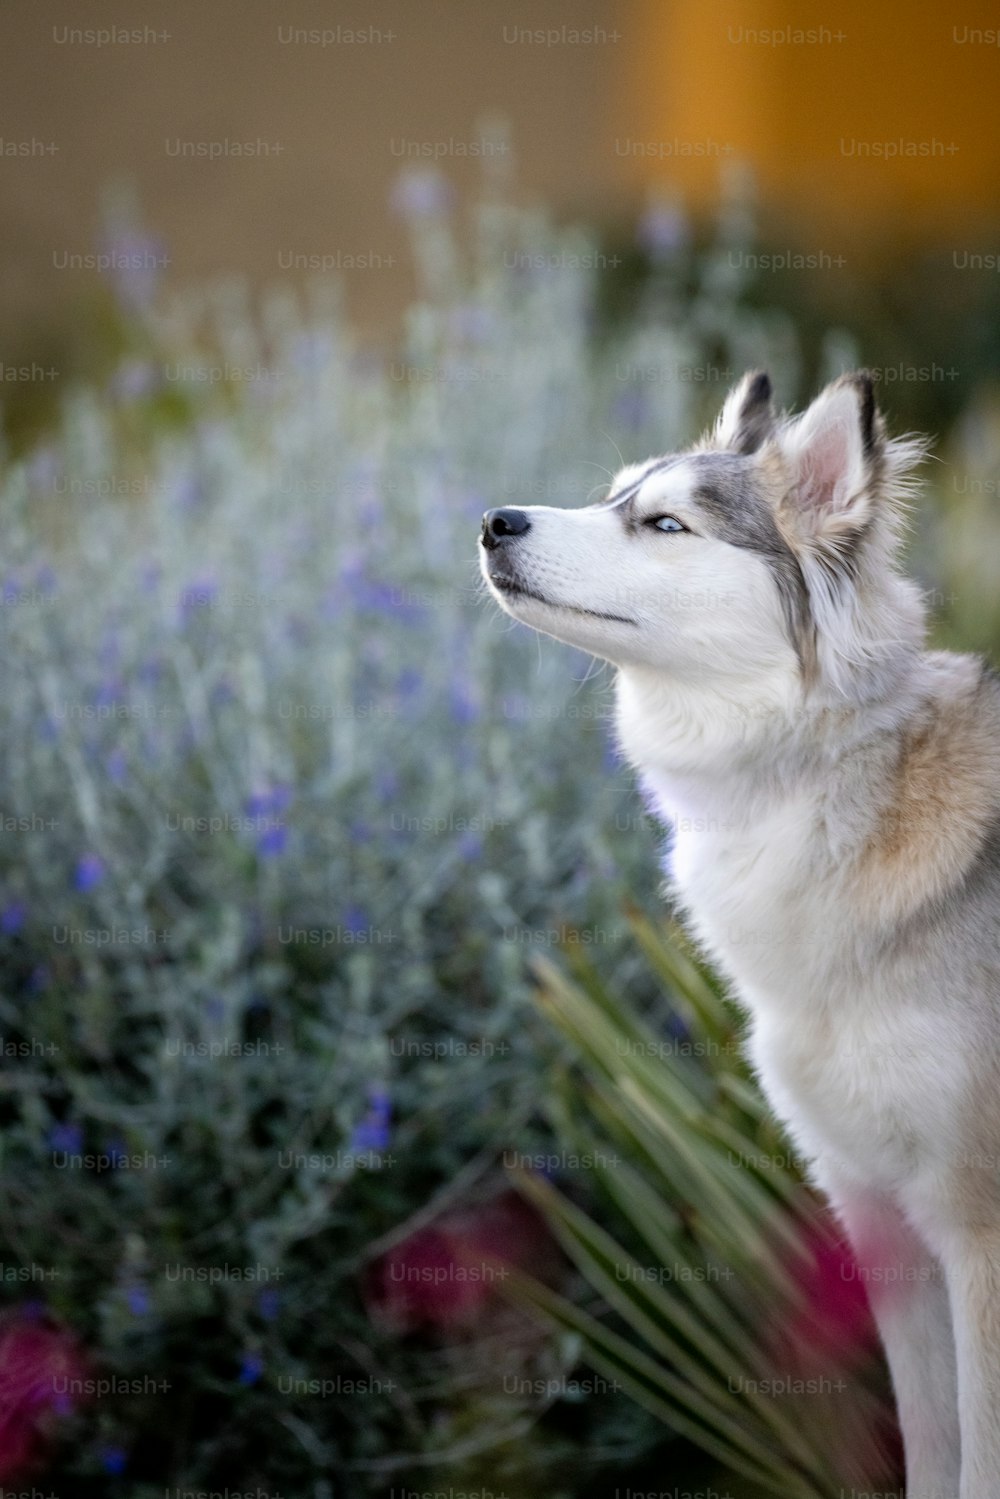 꽃 앞에 앉아 있는 허스키한 개